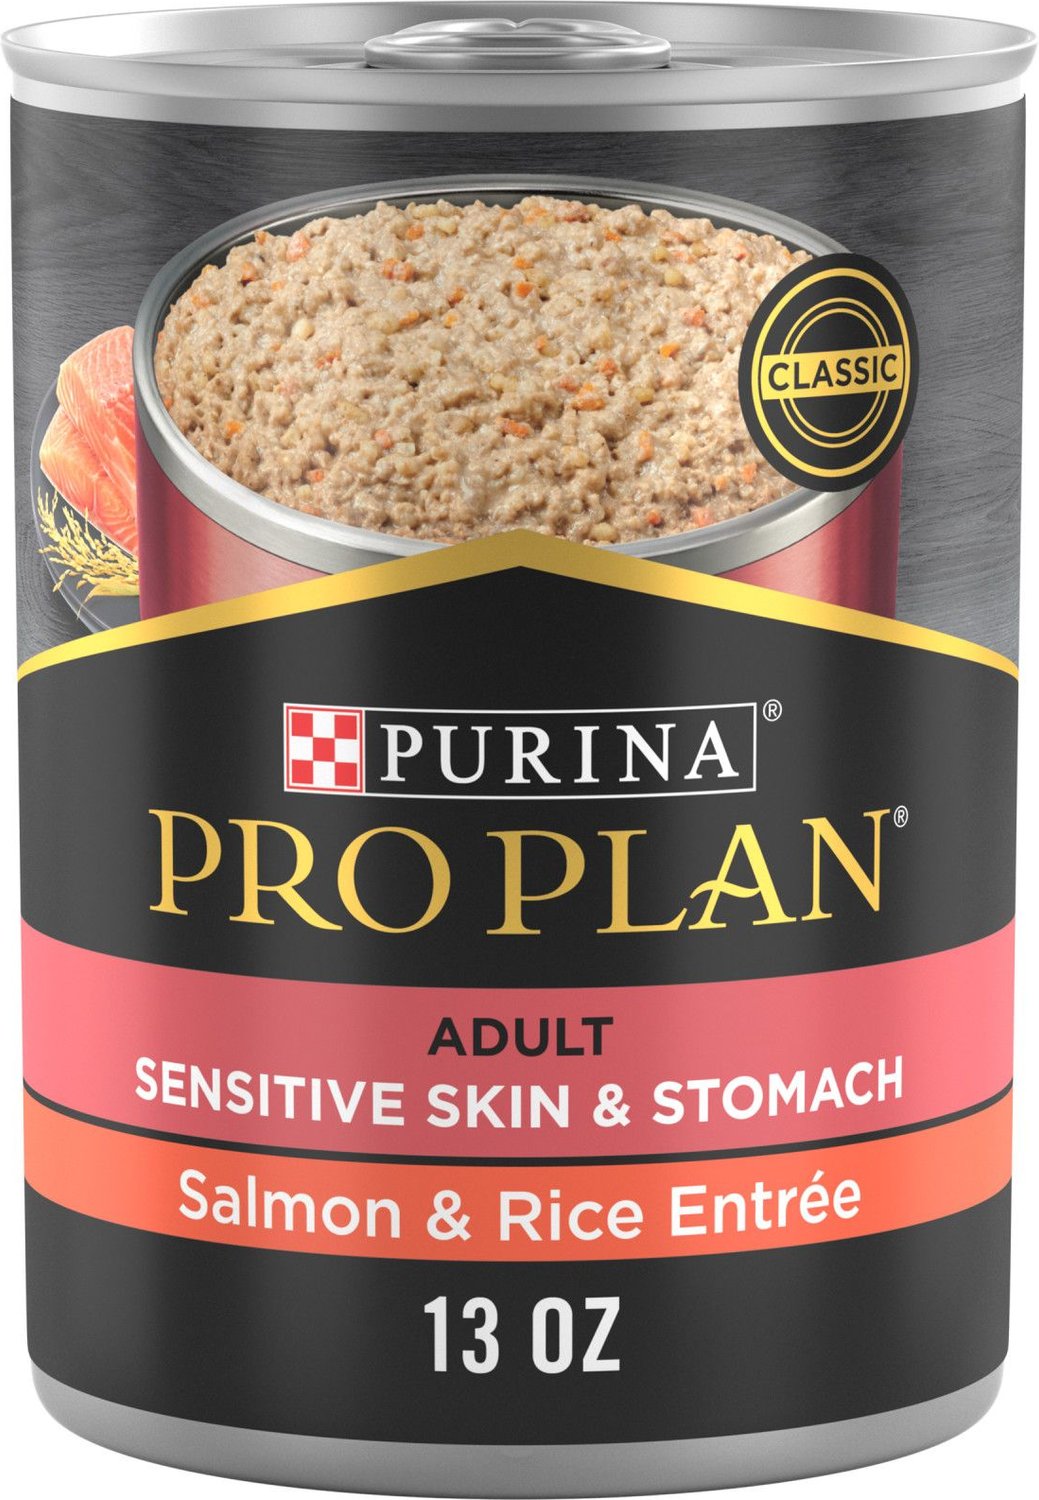 Purina Pro Plan Focus Paté de estómago y piel sensible Comida húmeda para perros